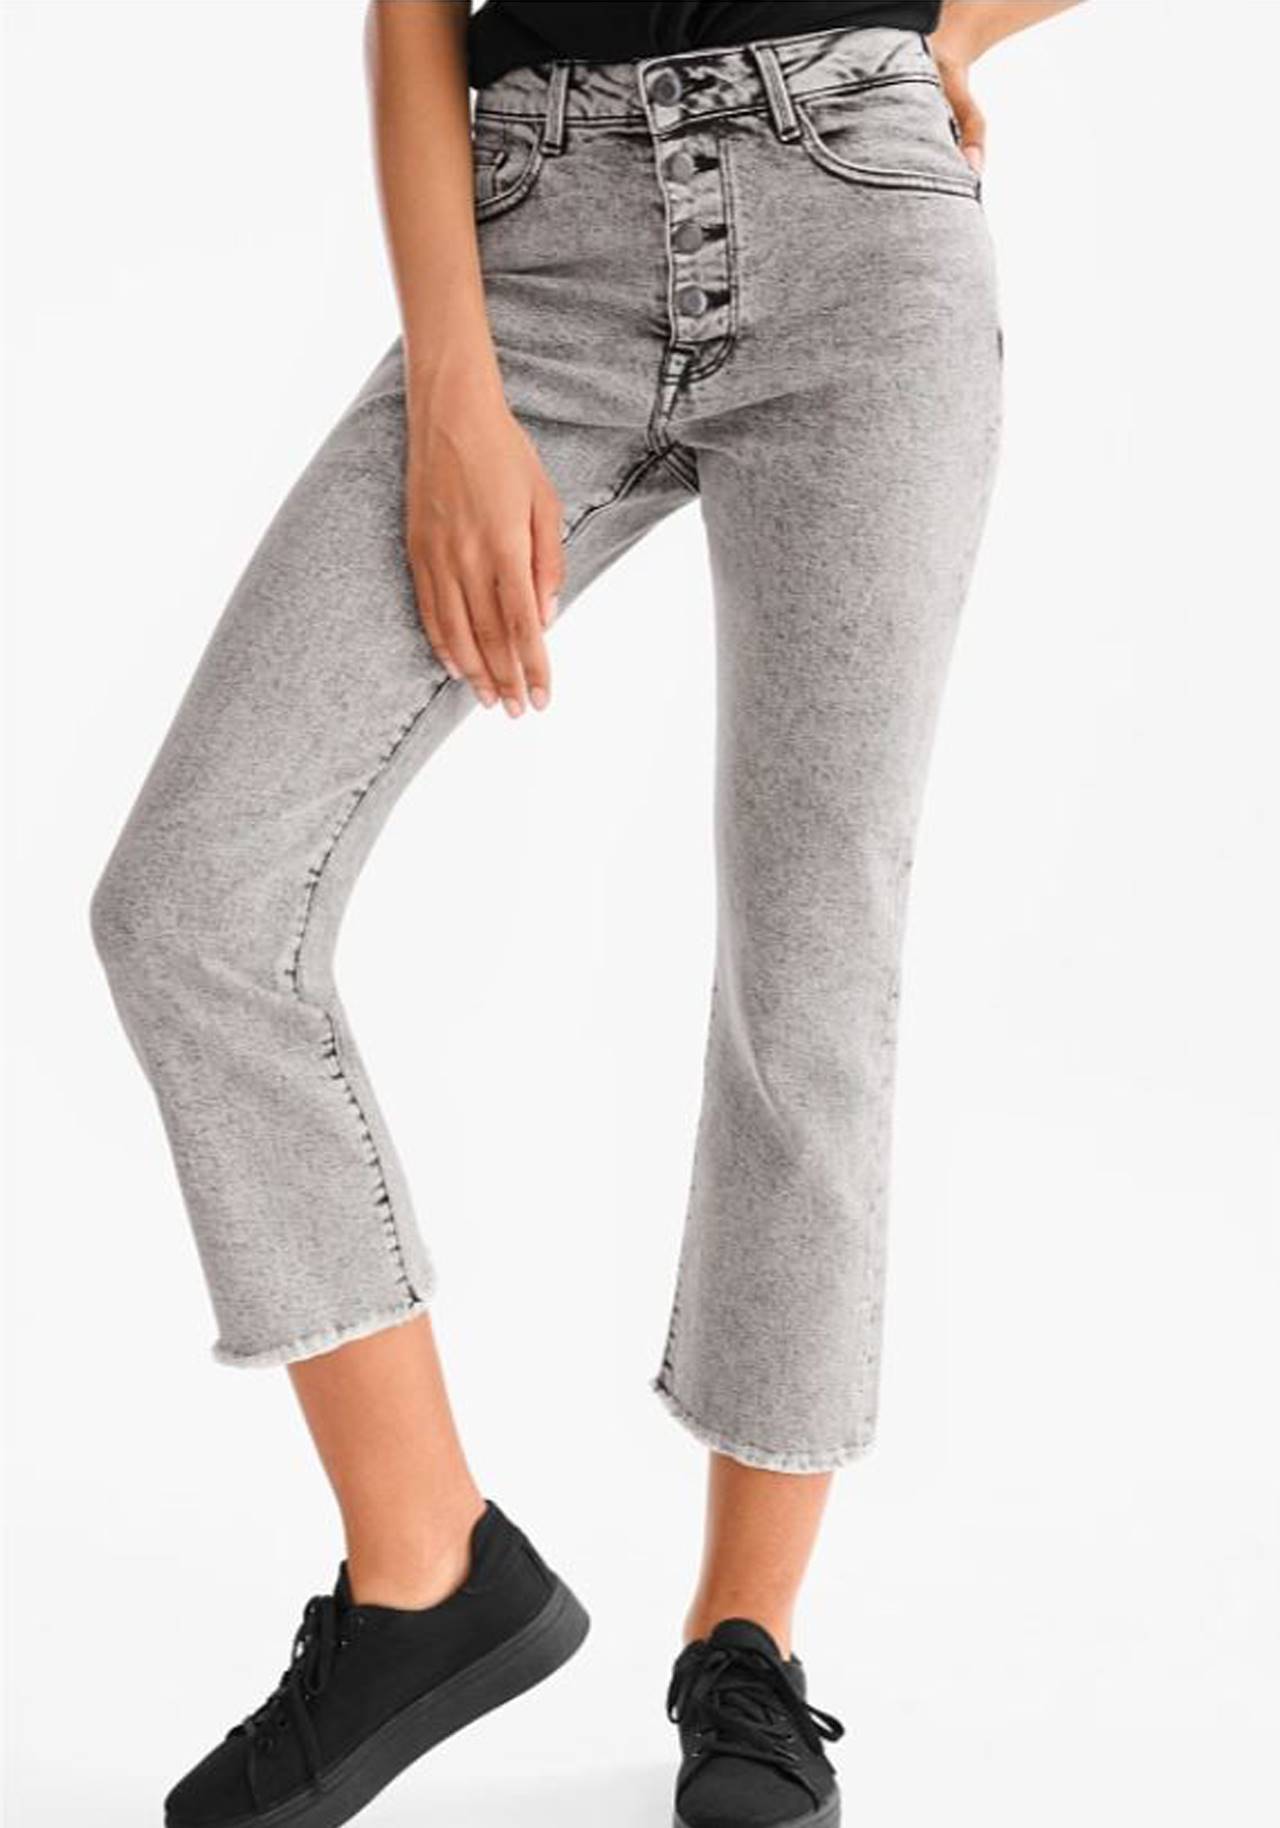 wide leg jeans vientre plano